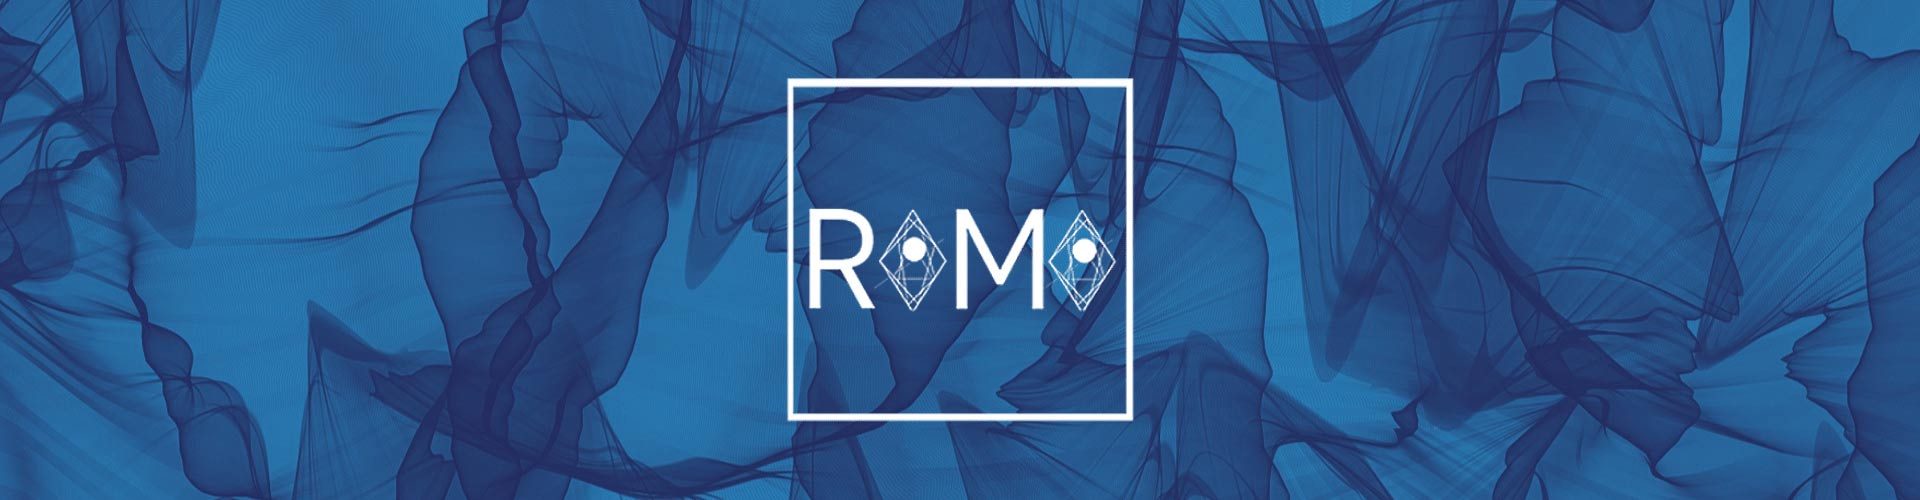 romo new blog logo